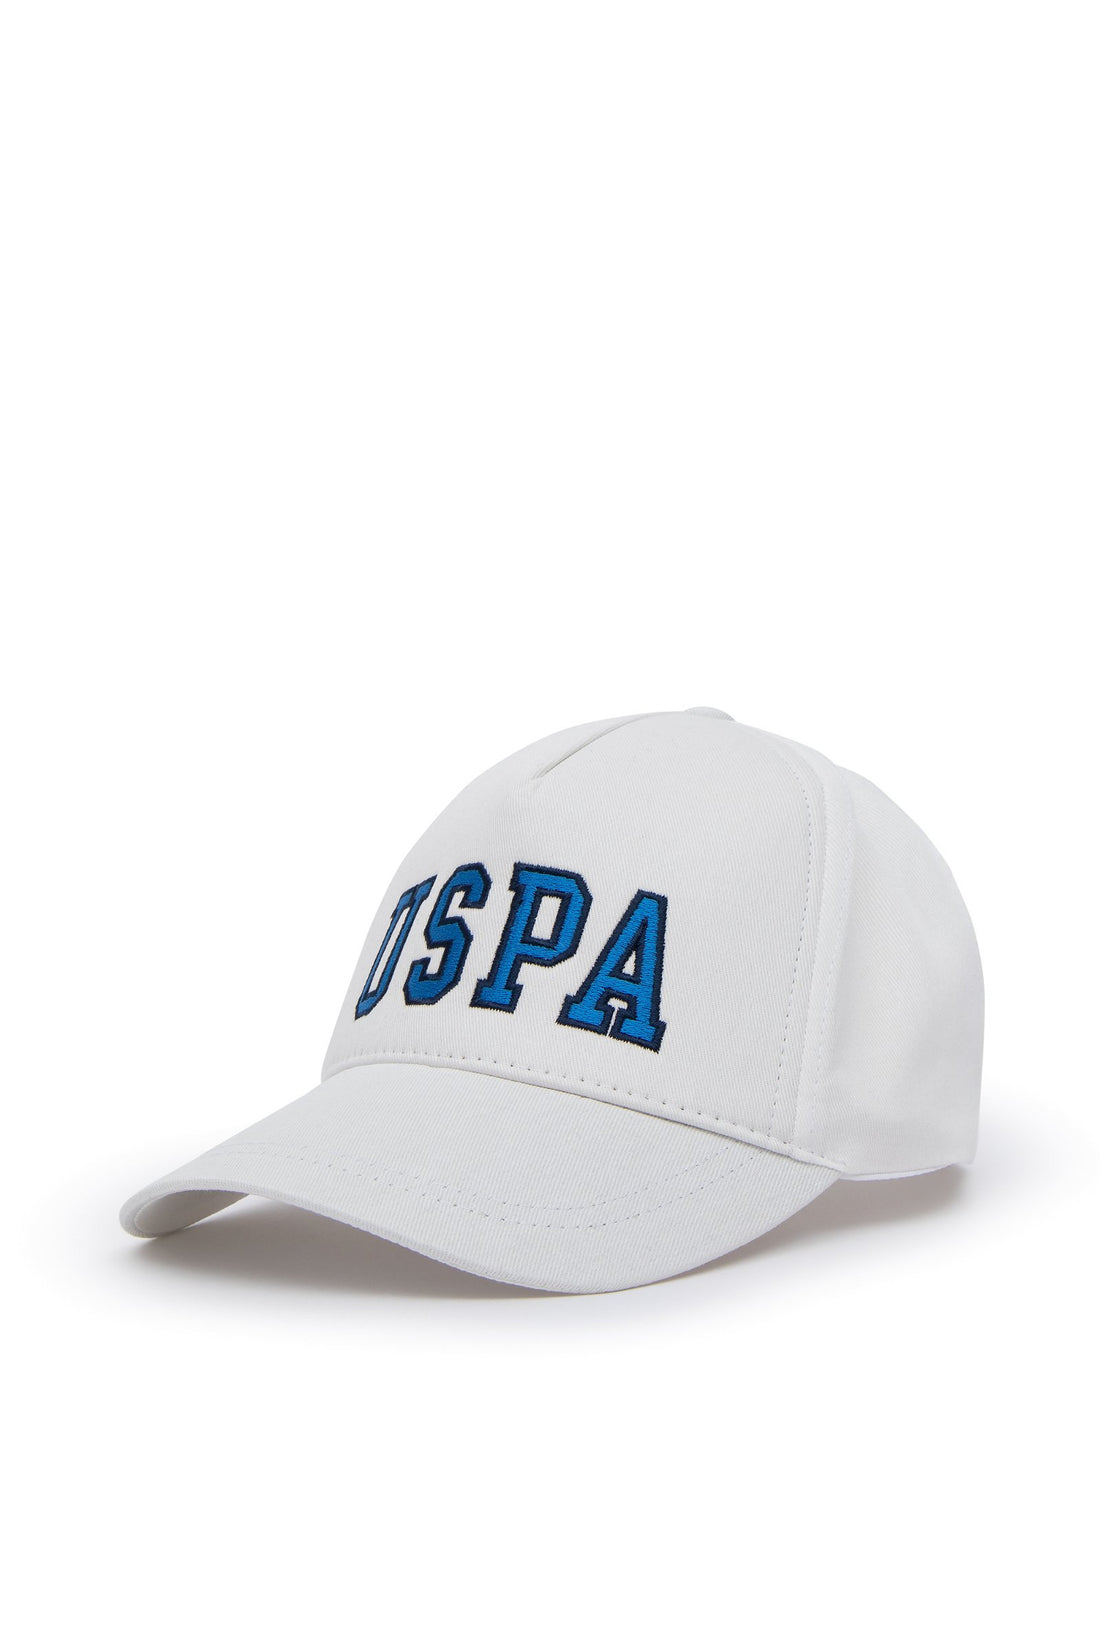 White Hat With Uspa Logo_A082SZ064P01 EDOS-IY24_VR013_01